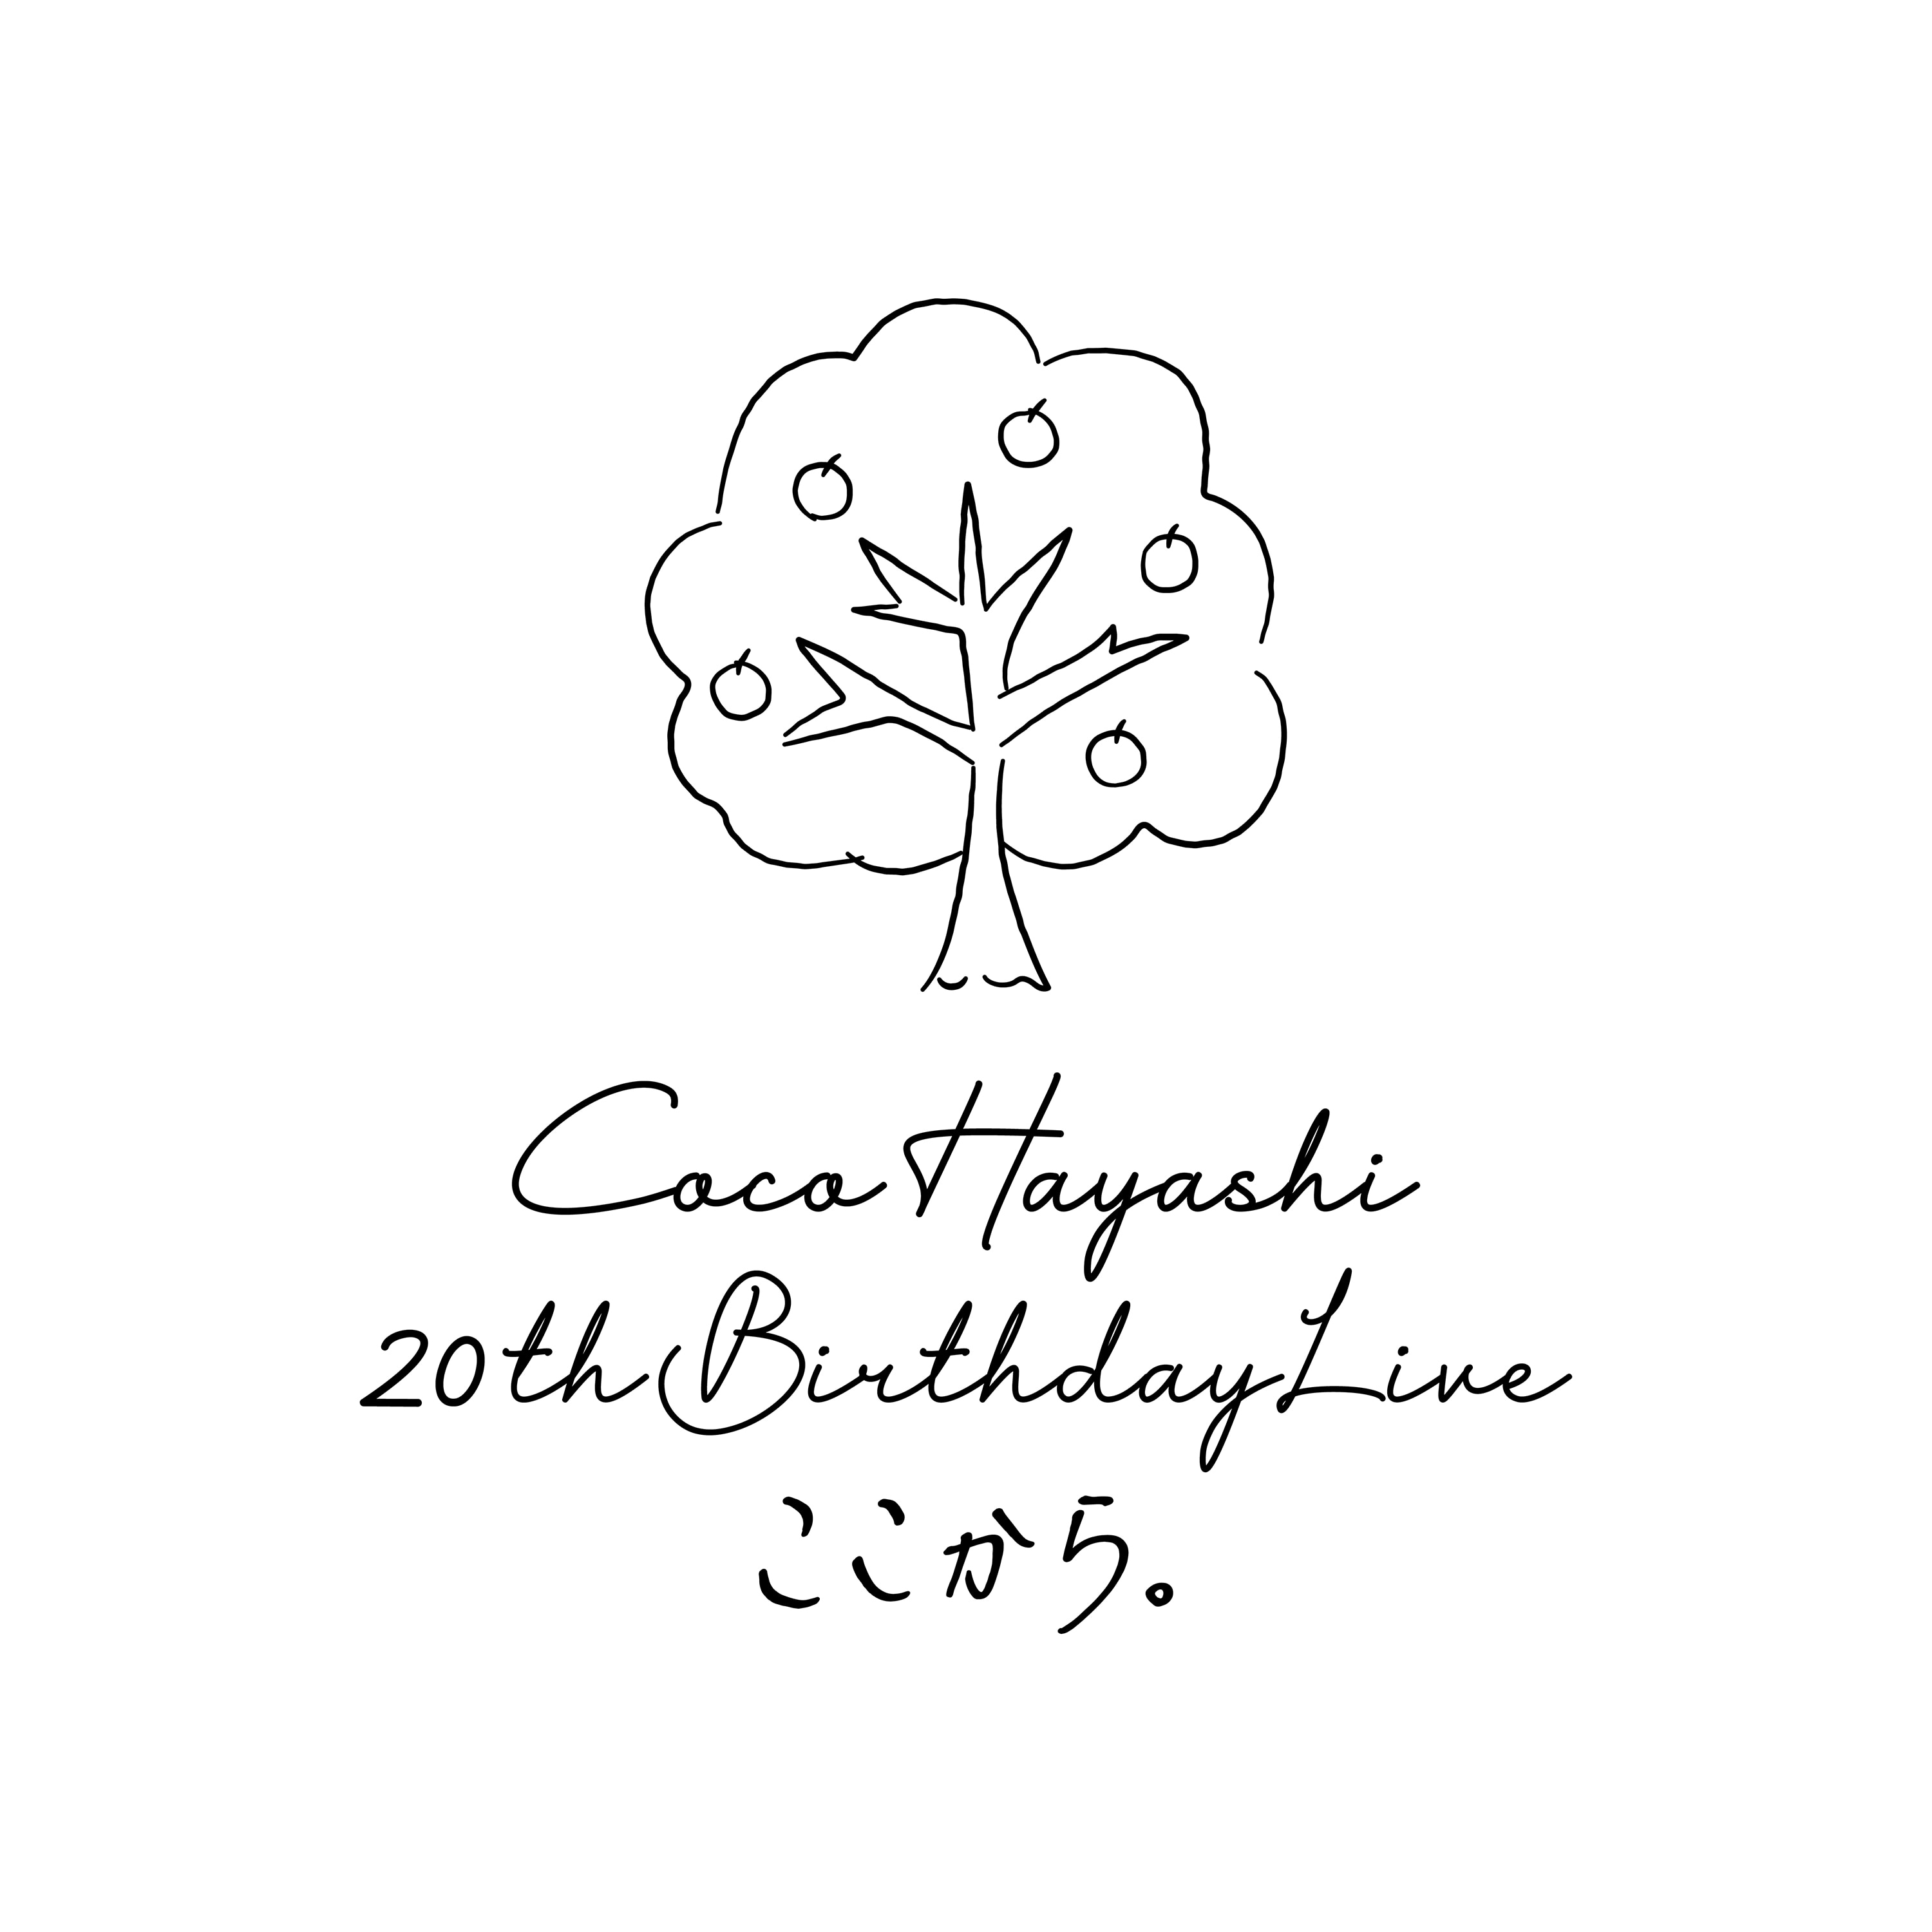 5月22日(日)林鼓子 20th Birthday Live～ここから。～　入場時のご案内<br />
【問診票の提出に関して】